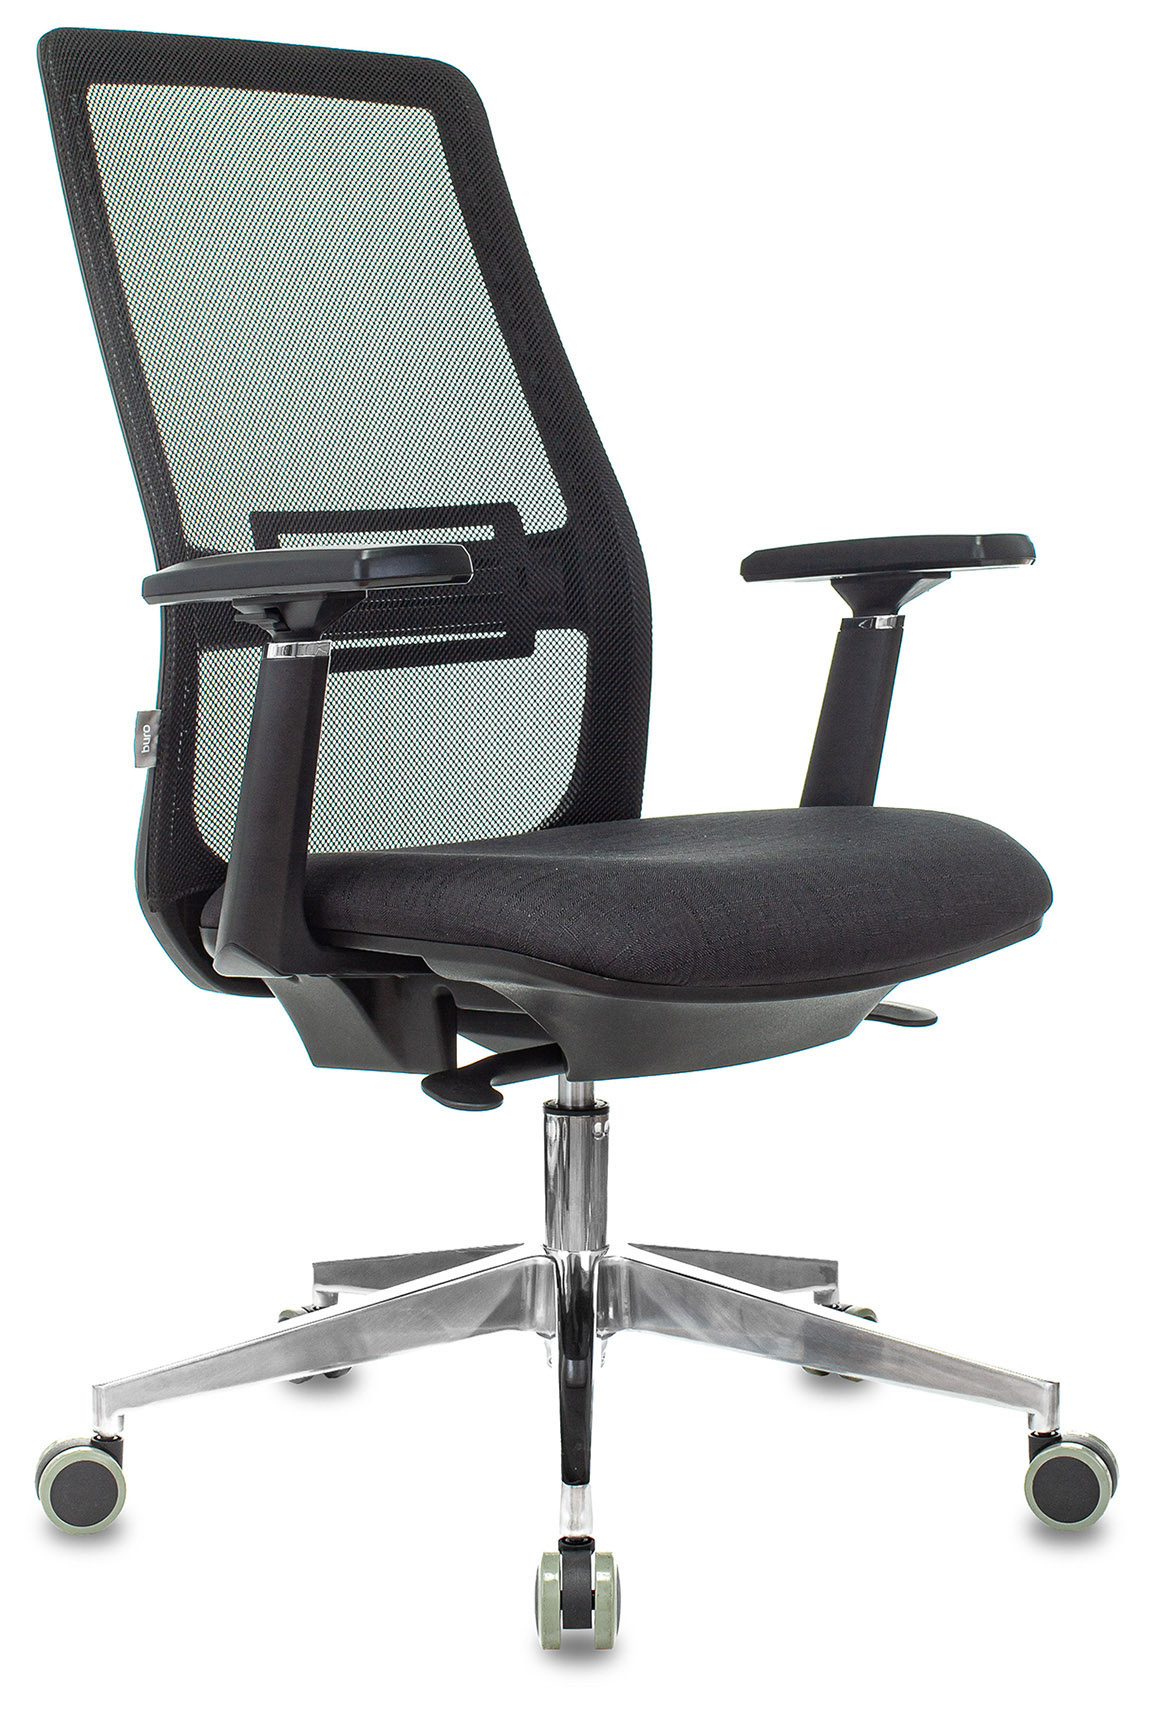 Кресло руководителя Бюрократ MC-915 черный TW-01 38-418 сетка/ткань крестовина алюминий